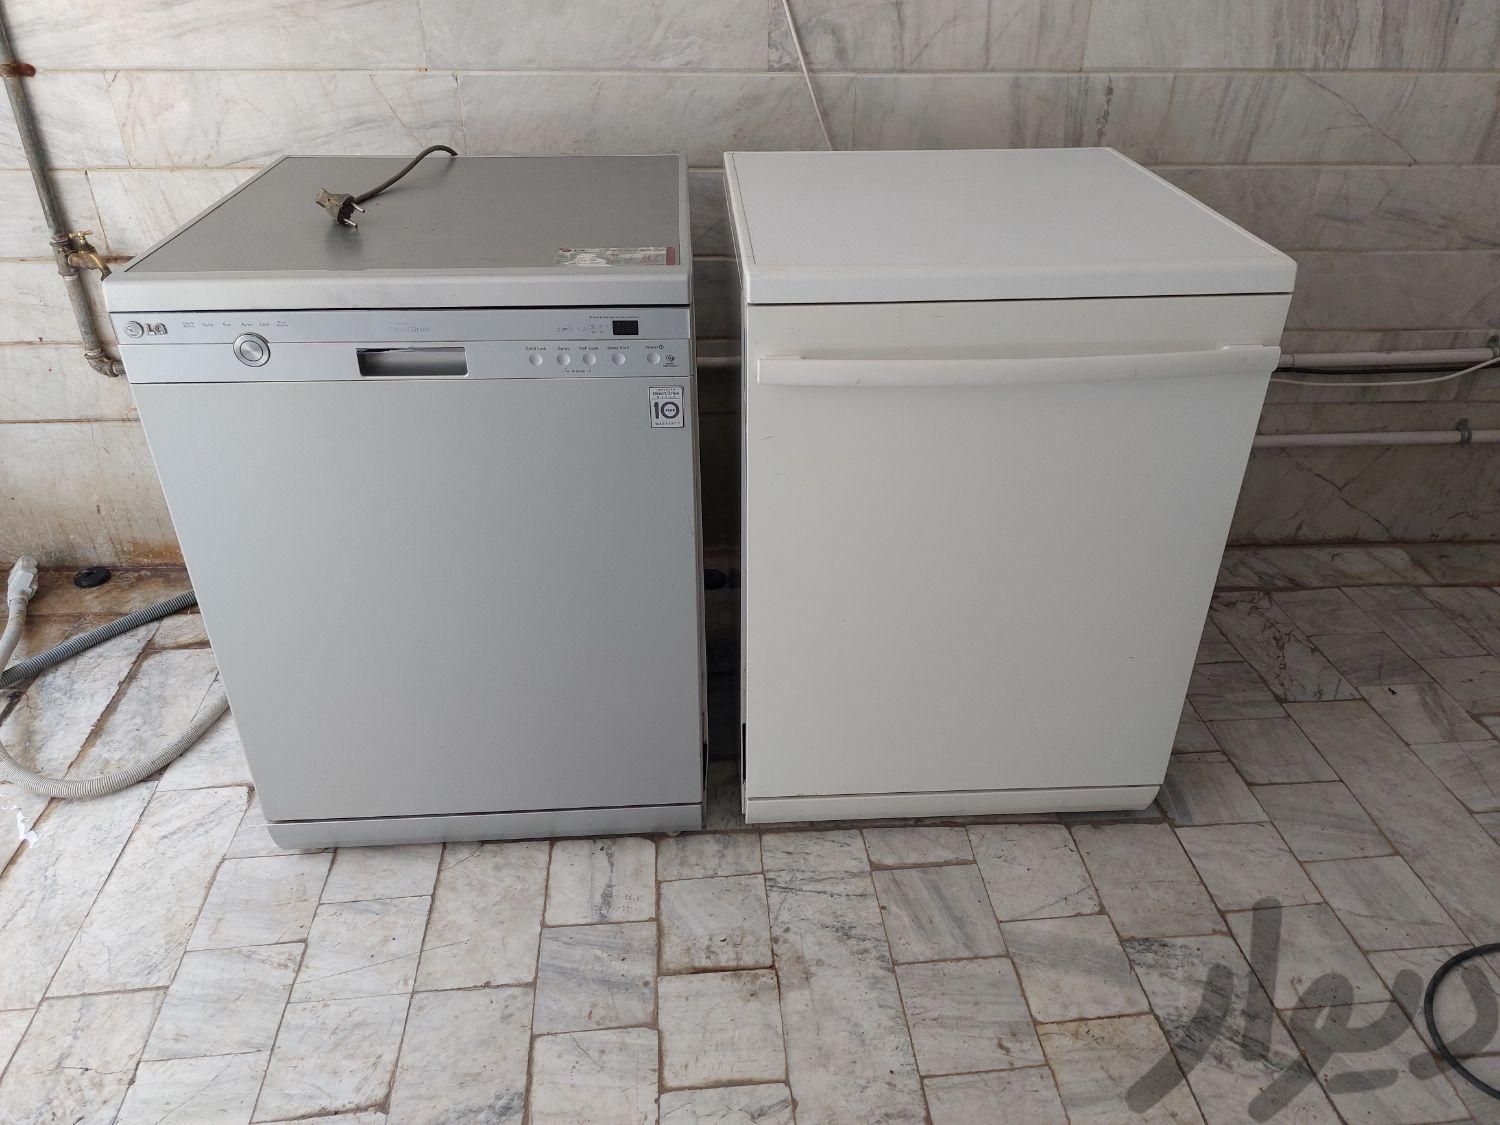 خریدار ظرفشویی سالم و خراب هستیم (کل مناطق)|ماشین ظرفشویی|تهران, نواب|دیوار